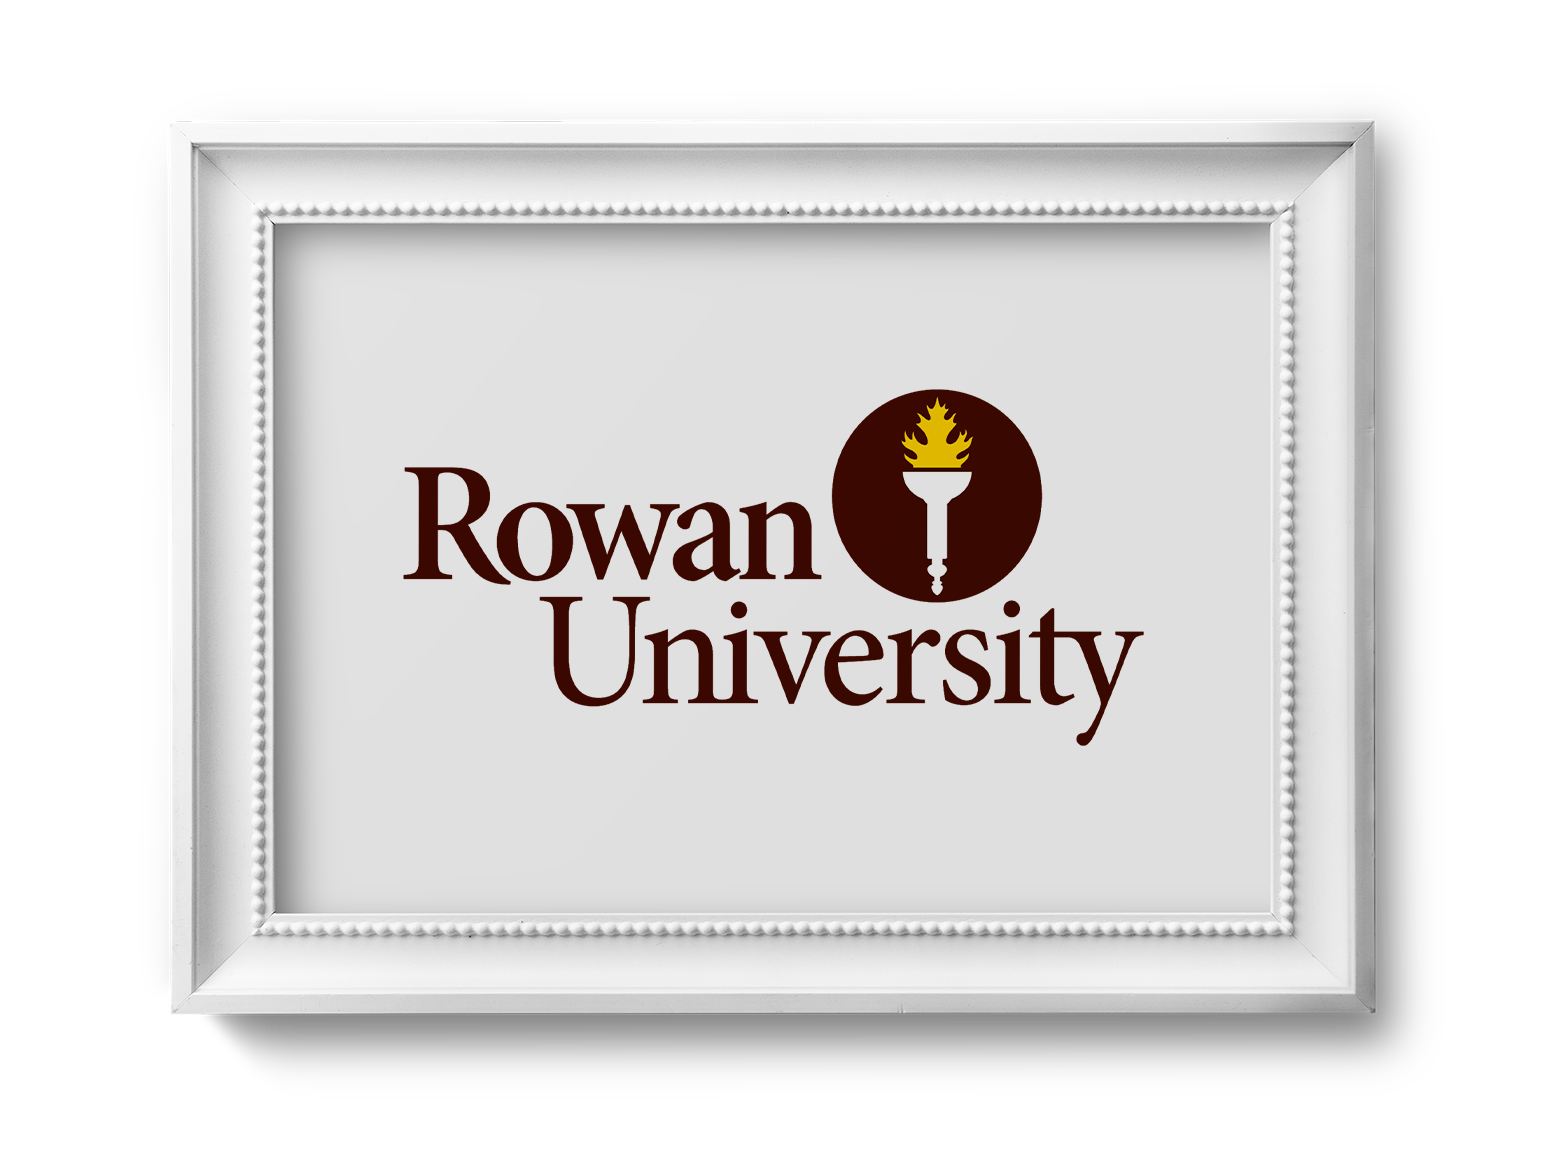 rowan university